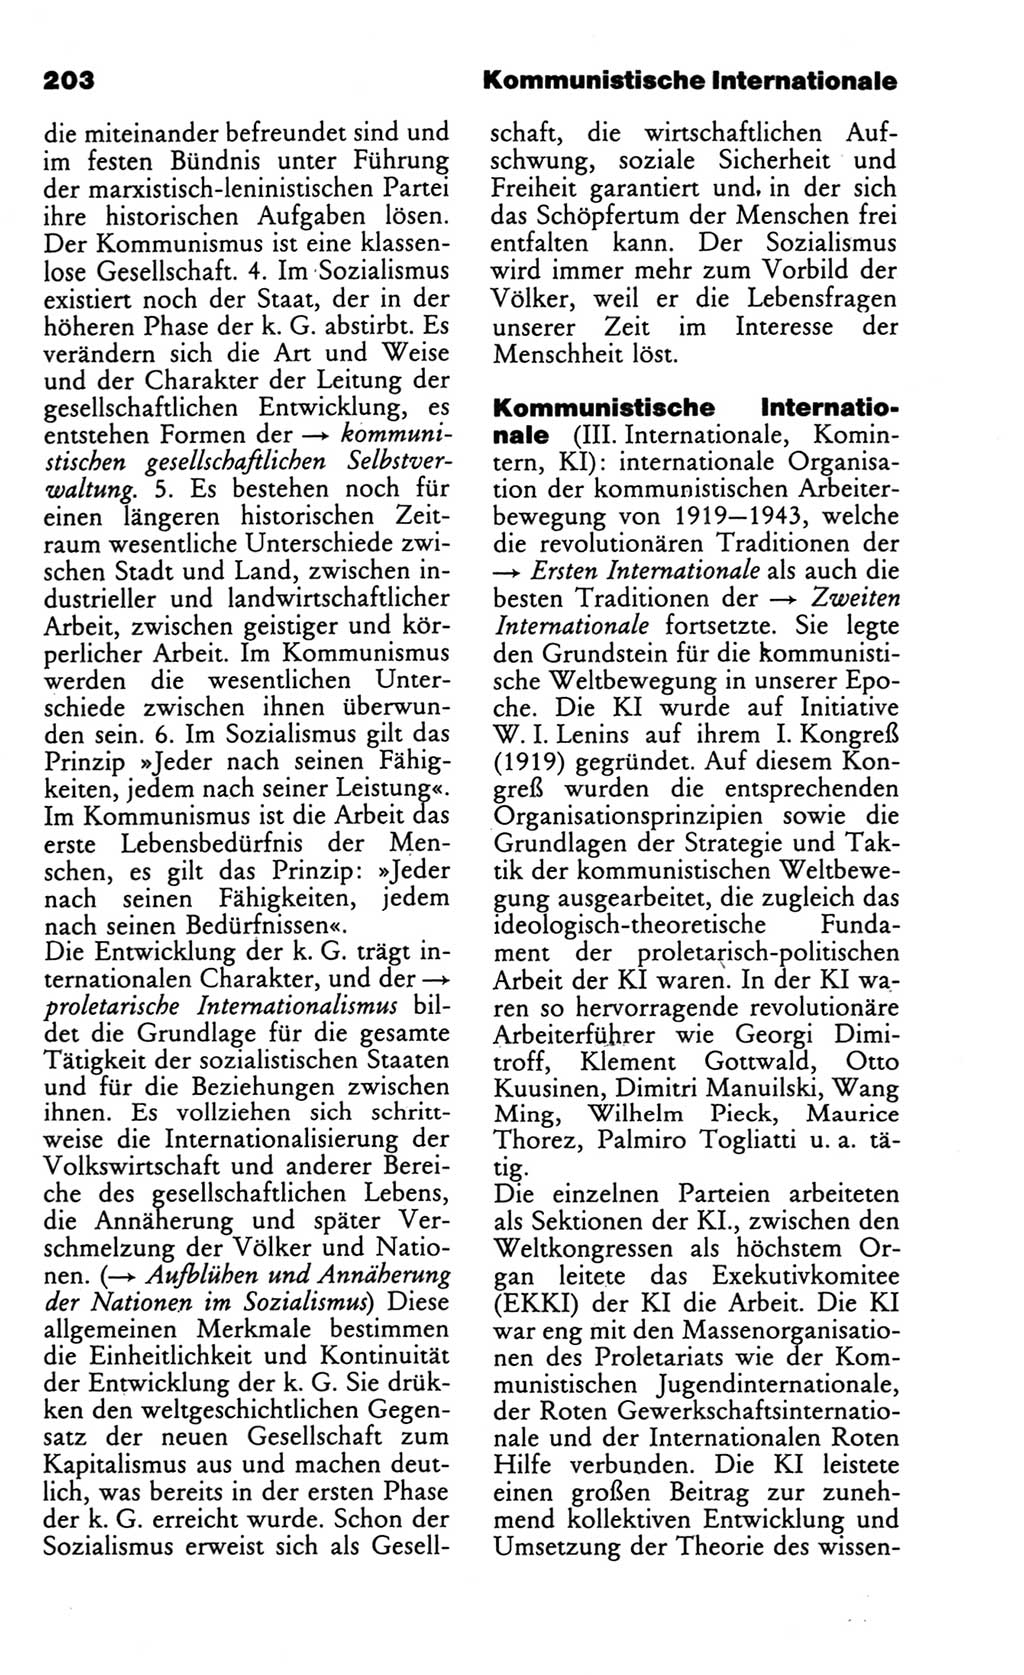 Wörterbuch des wissenschaftlichen Kommunismus [Deutsche Demokratische Republik (DDR)] 1986, Seite 203 (Wb. wiss. Komm. DDR 1986, S. 203)